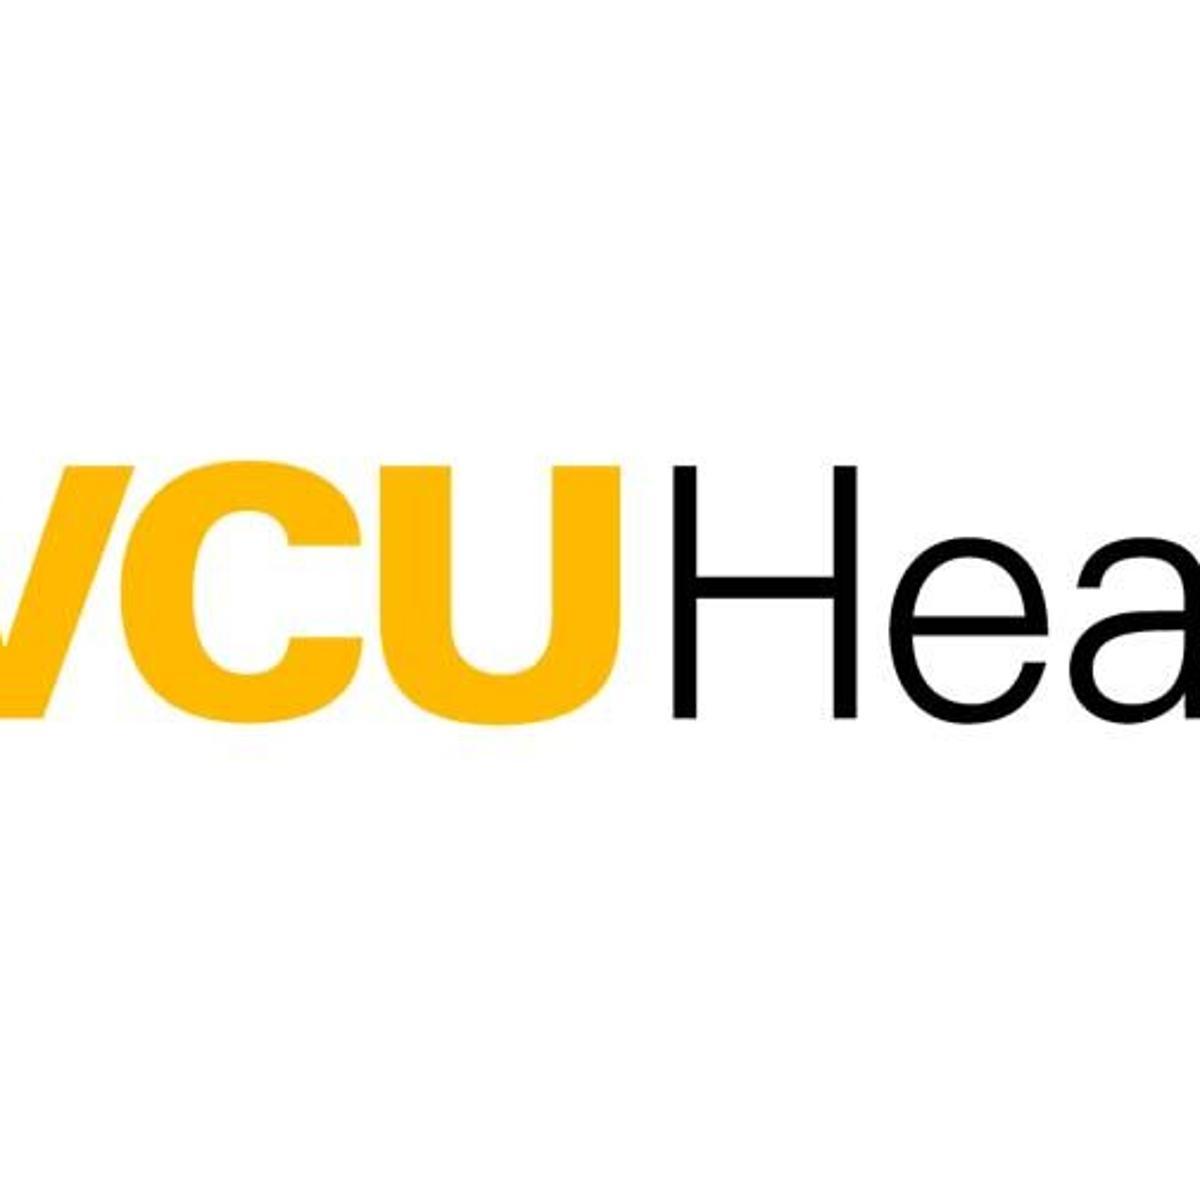 VCU Logo - VCU Health is new brand for VCU Medical Center